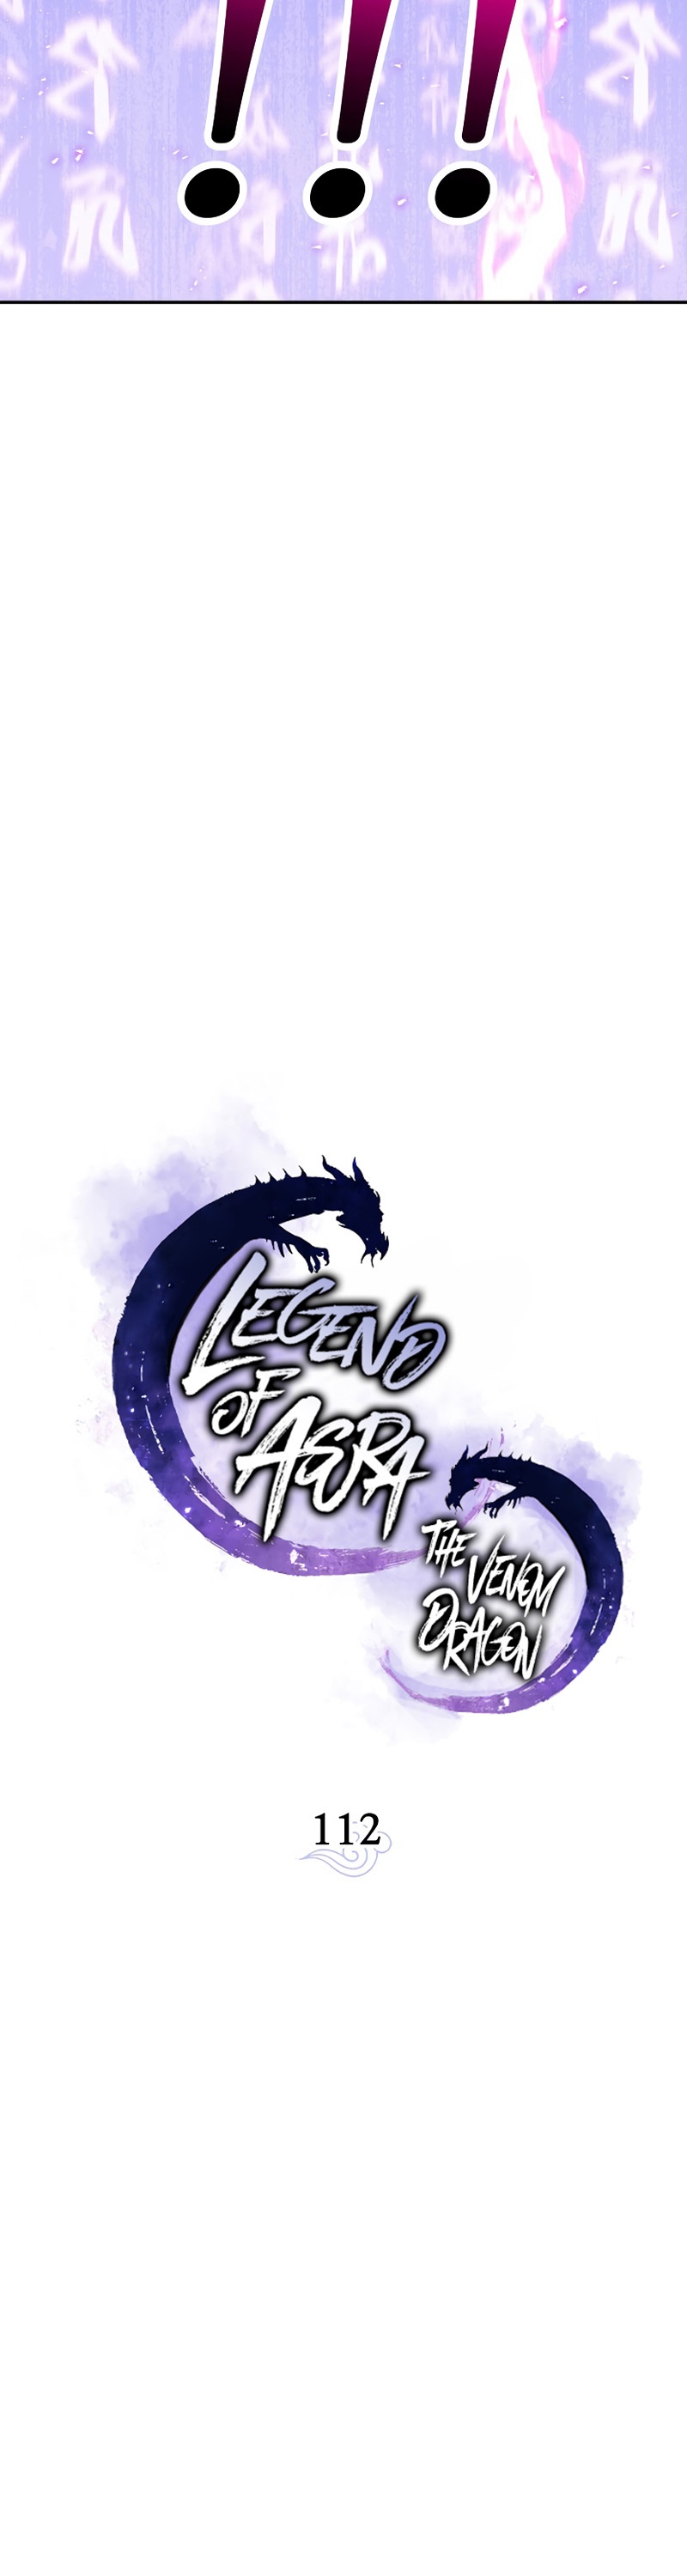 Legend of Asura – The Venom Dragon 112 (4) 002